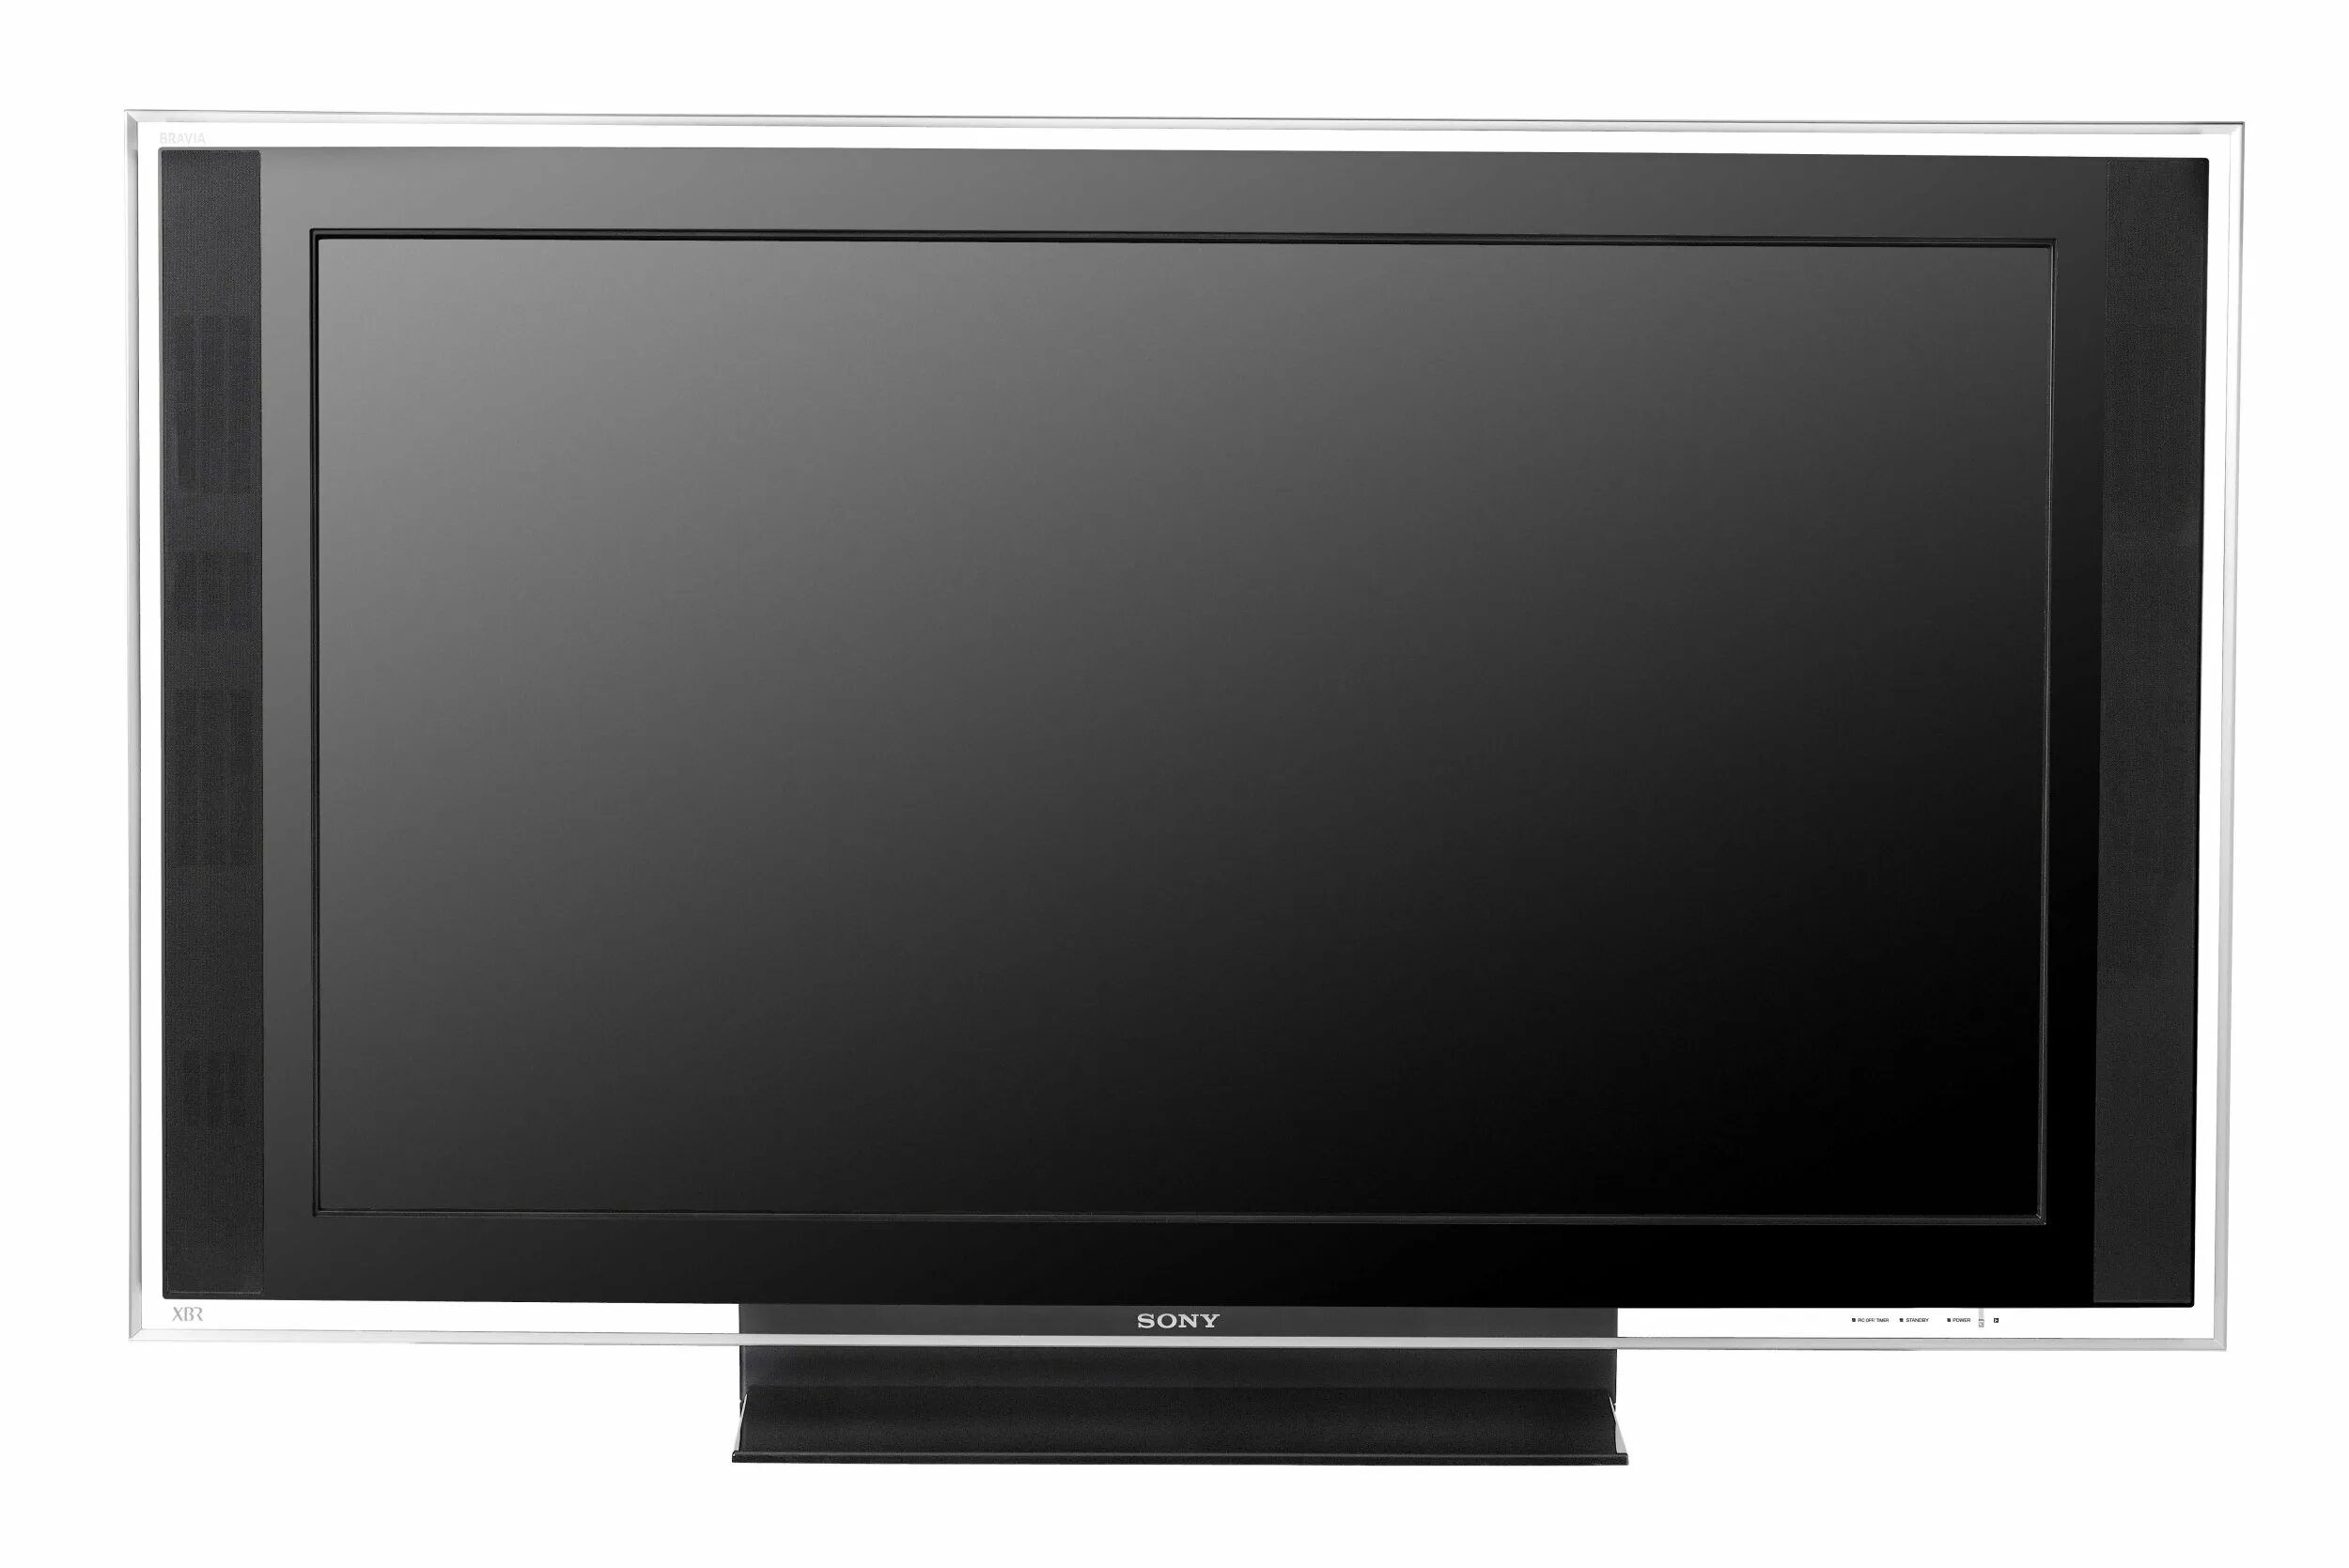 Телевизор 52 см. Sony Bravia KDL-40. Телевизор Sony Bravia KDL. Sony Bravia KDL-32ex600.